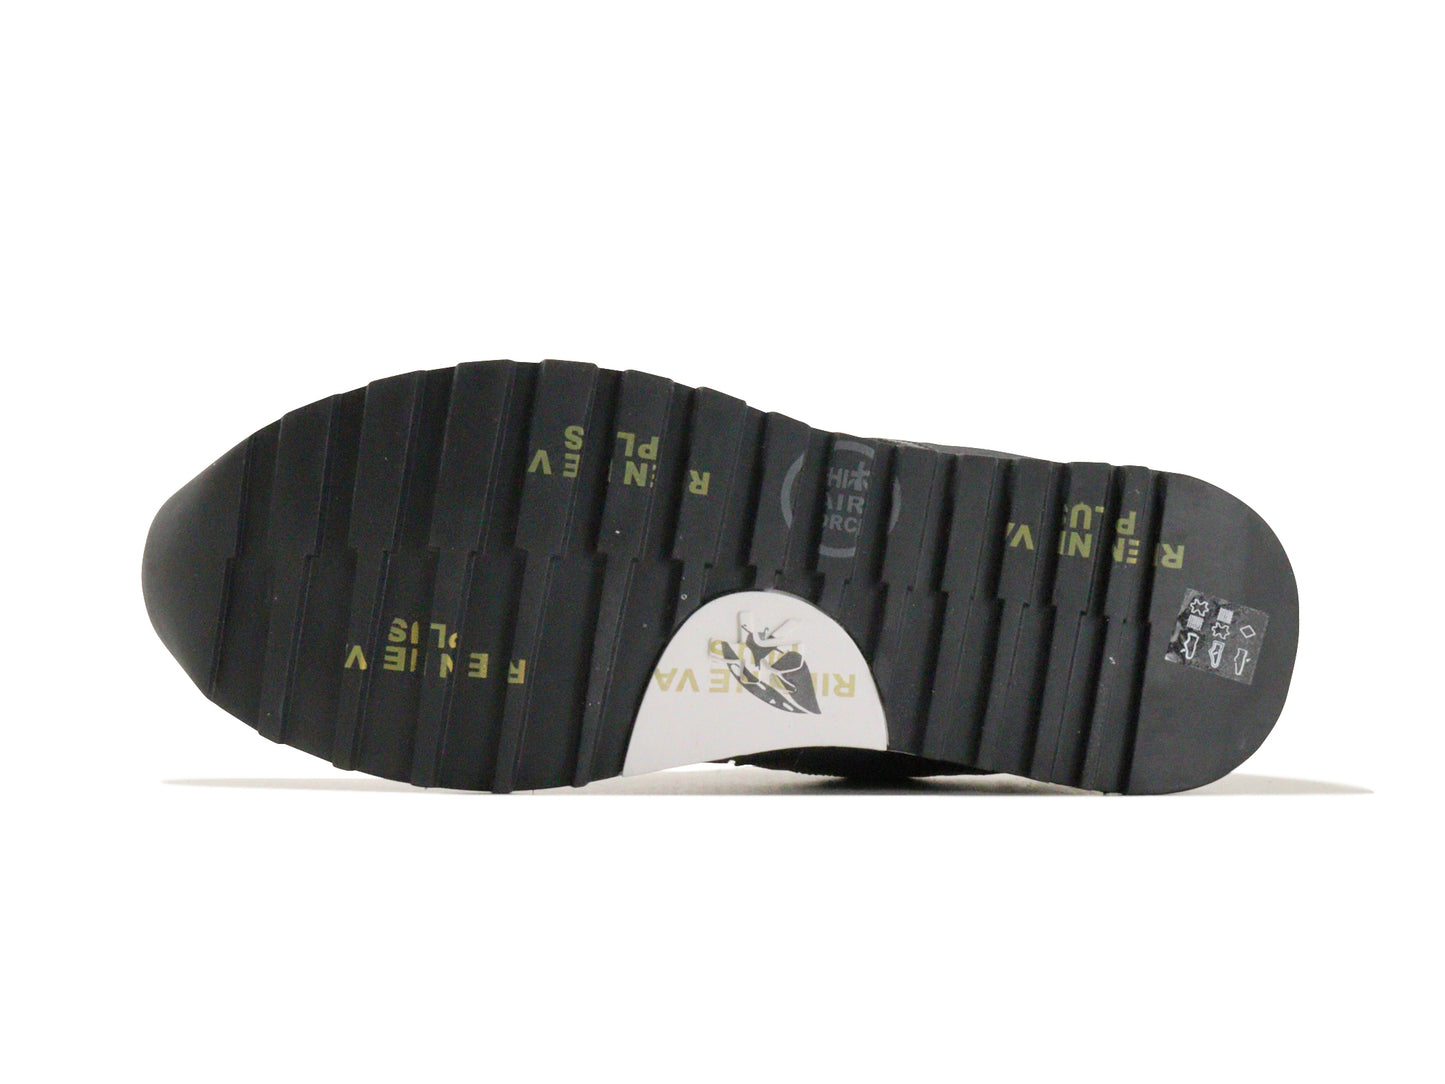 PREMIATAのスニーカー「4511」の靴底の商品画像